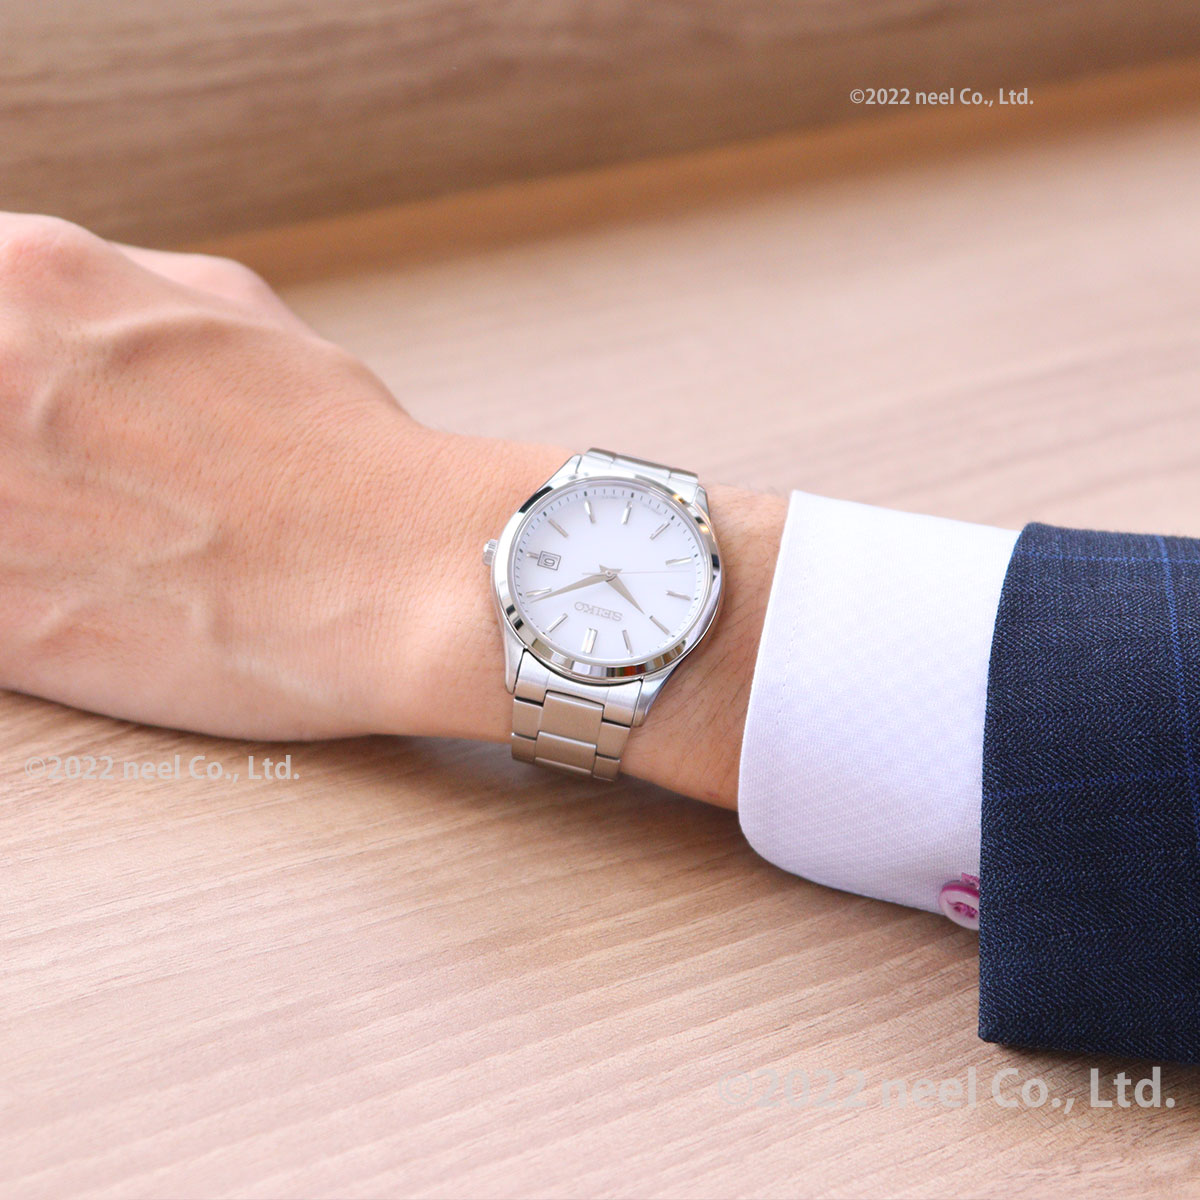 セイコー セレクション SEIKO SELECTION Sシリーズ ショップ専用 流通限定モデル ソーラー 腕時計 メンズ ペア SBPX143